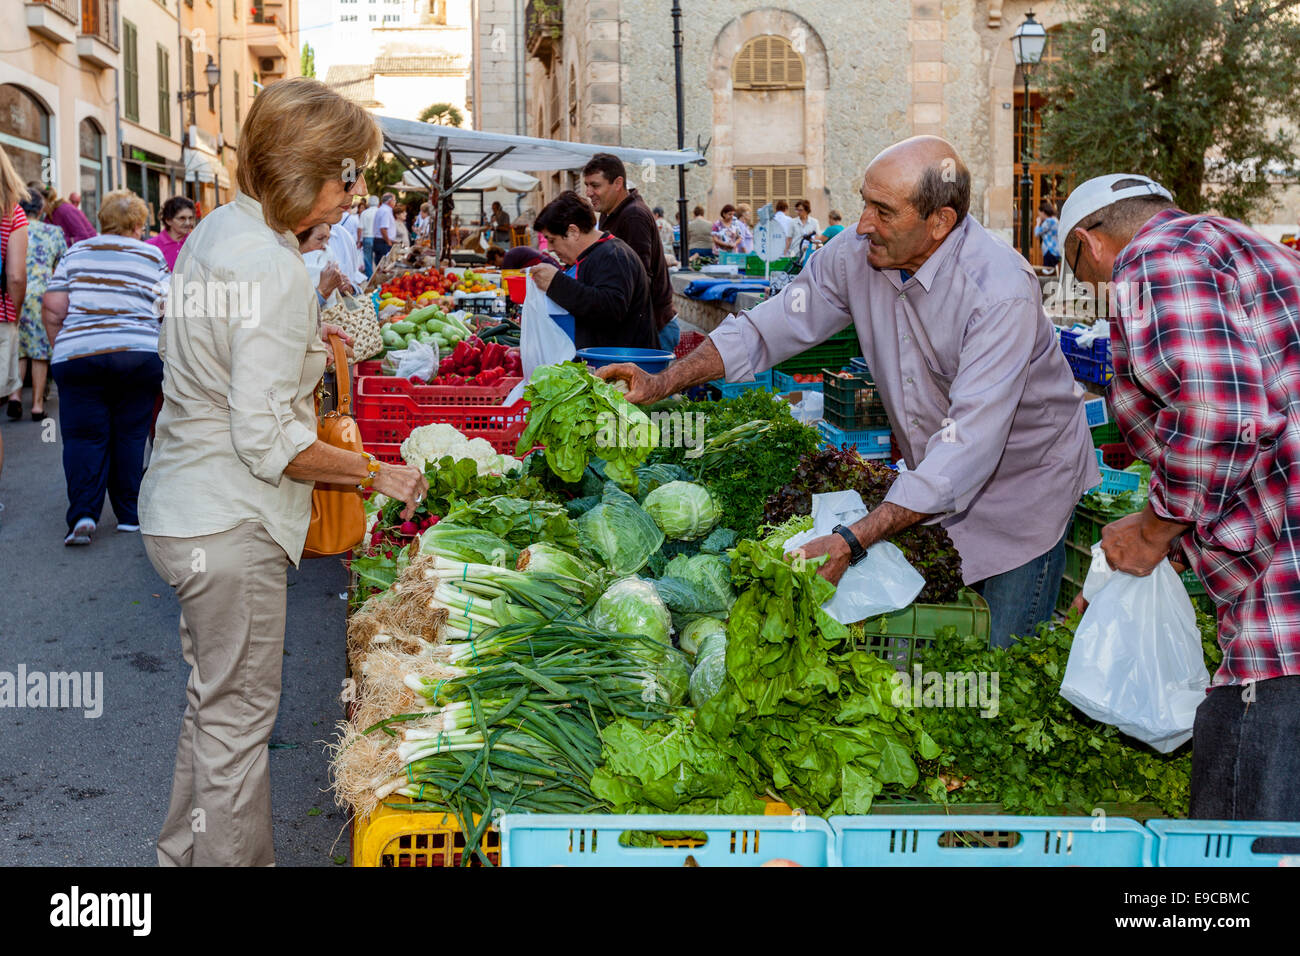 Les femmes d'acheter des légumes au marché du jeudi à Inca, Majorque - Espagne Banque D'Images